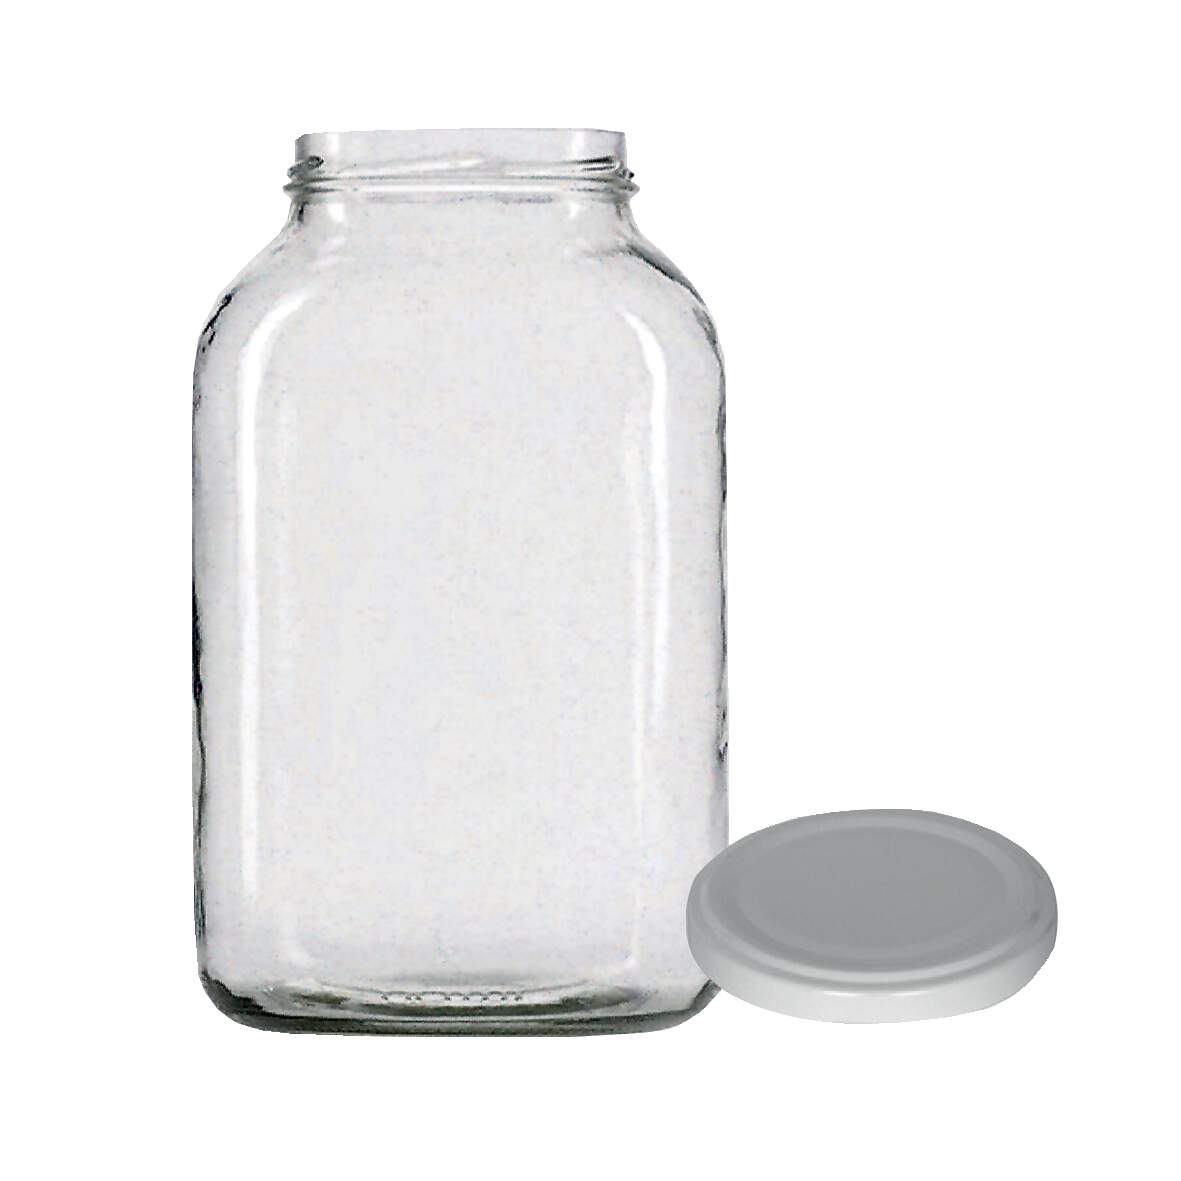 1255183 - Einkochglas mit Deckel weiß